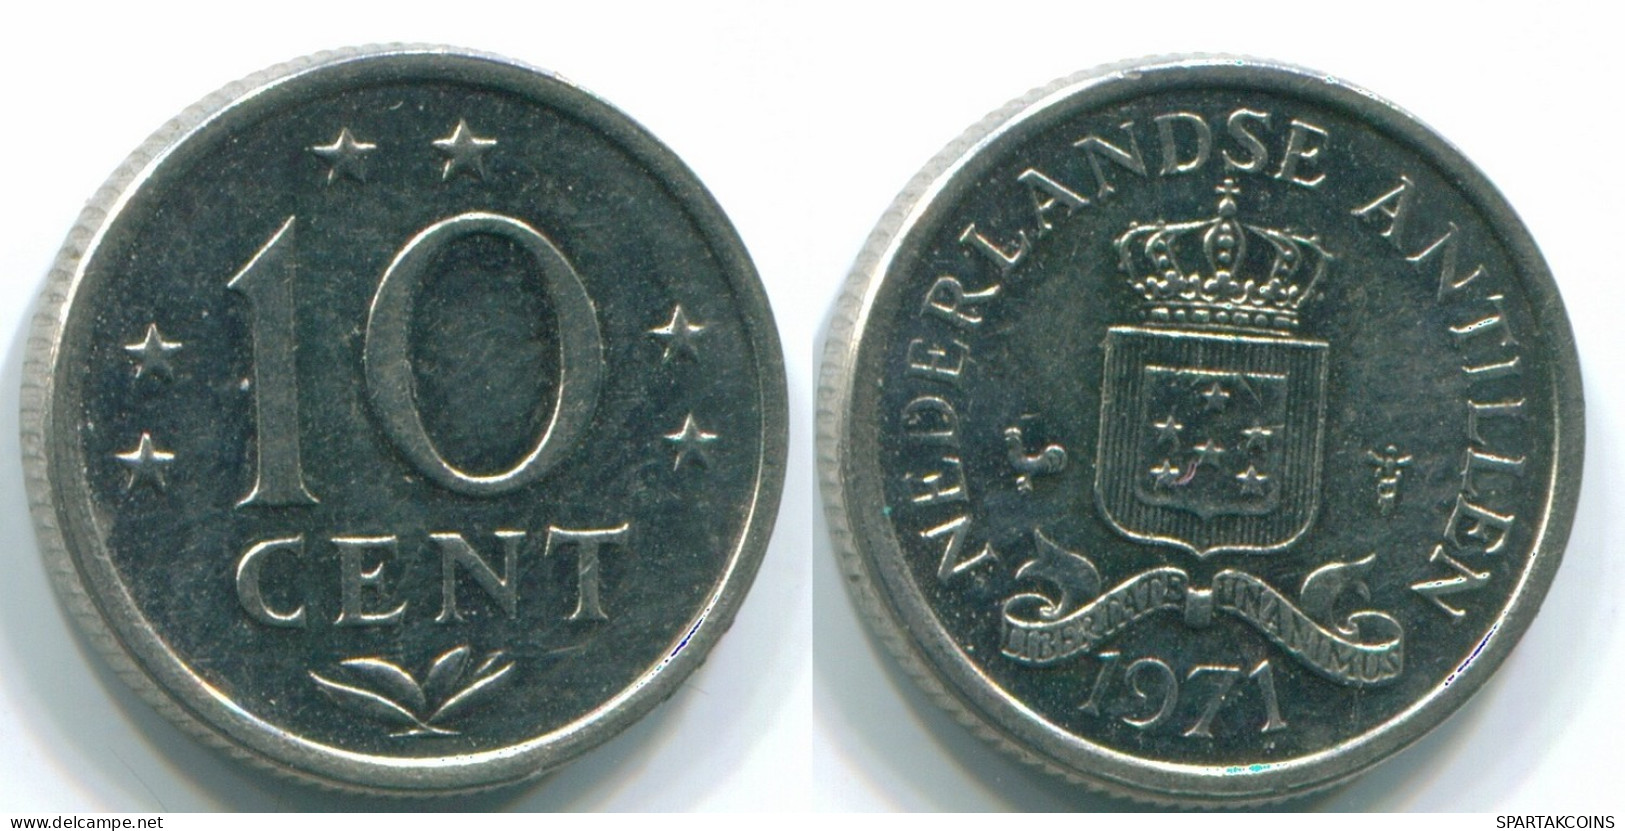 10 CENTS 1971 NETHERLANDS ANTILLES Nickel Colonial Coin #S13460.U.A - Antillas Neerlandesas